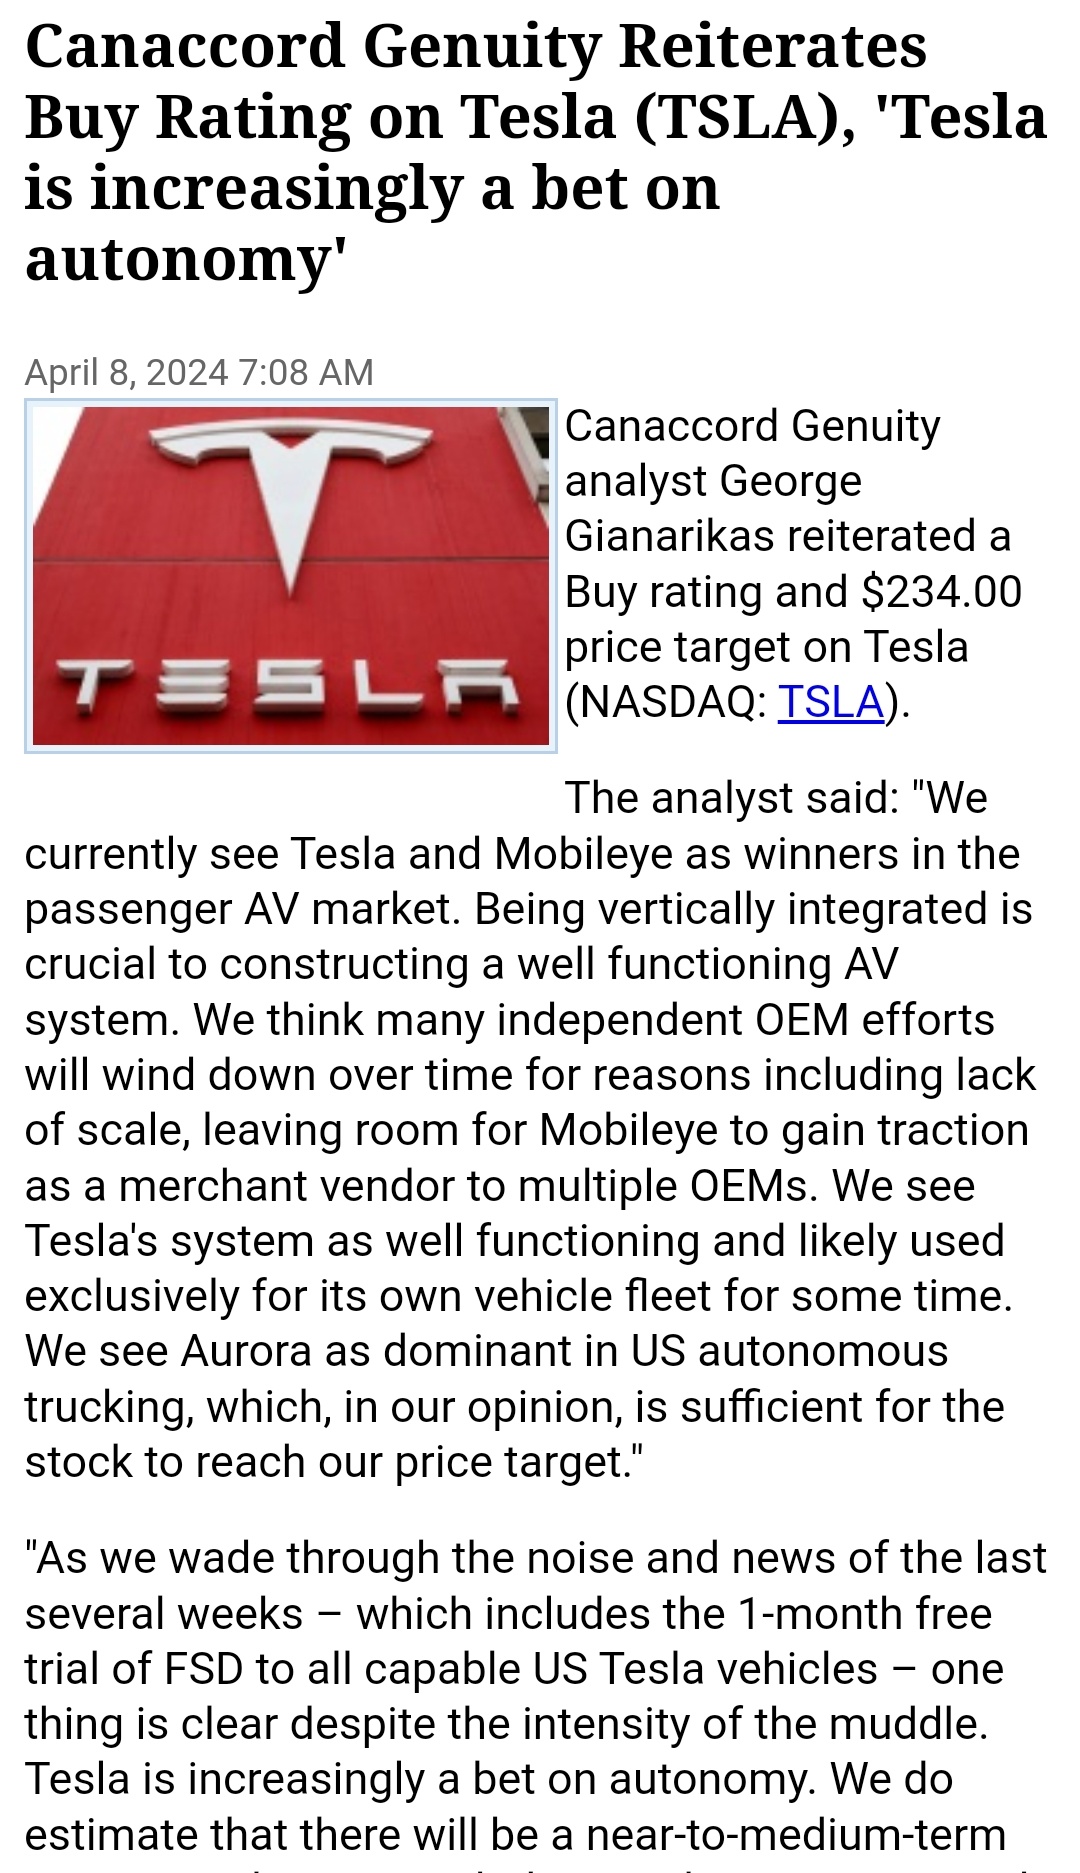 $テスラ (TSLA.US)$$BYD (01211.HK)$$ニオ (NIO.US)$$シャオペン (XPEV.US)$Canaccord Genuityのアナリストであるジョージ・ジャナリカス氏は、Teslaについての買いのレーティングと$234.00の目標株価を繰り返し提示しました。アナリストは「現在、私たちはT...